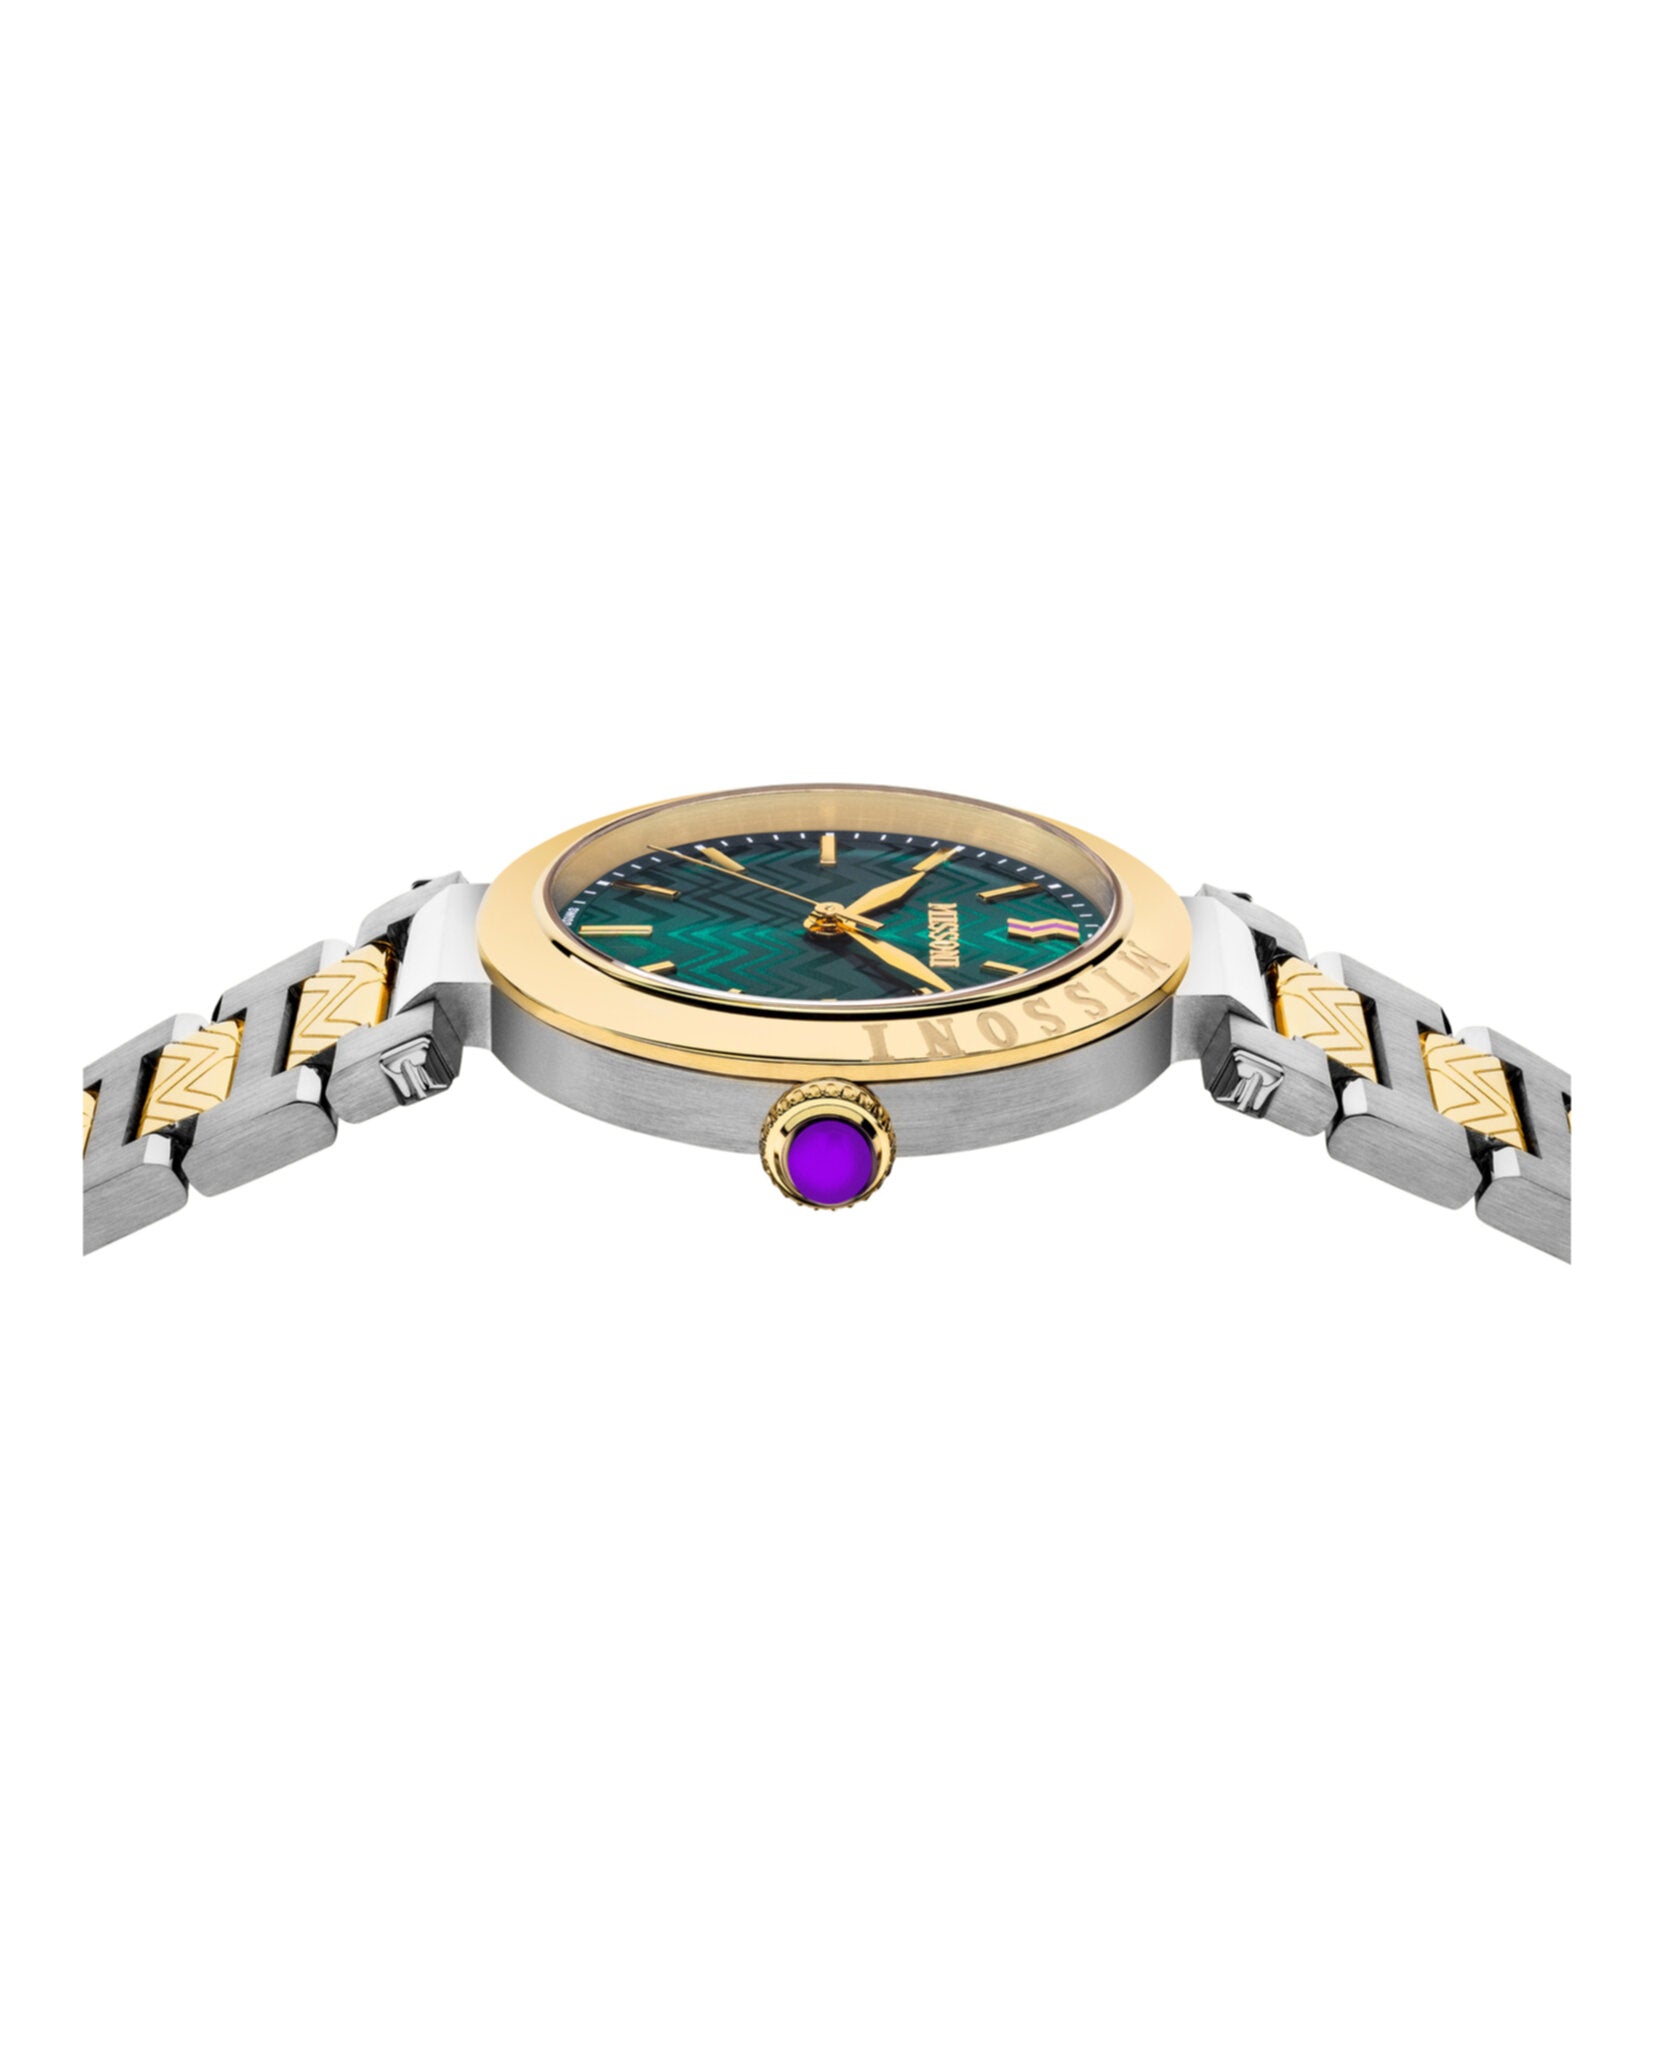 Missoni Atelier Bracelet Watch